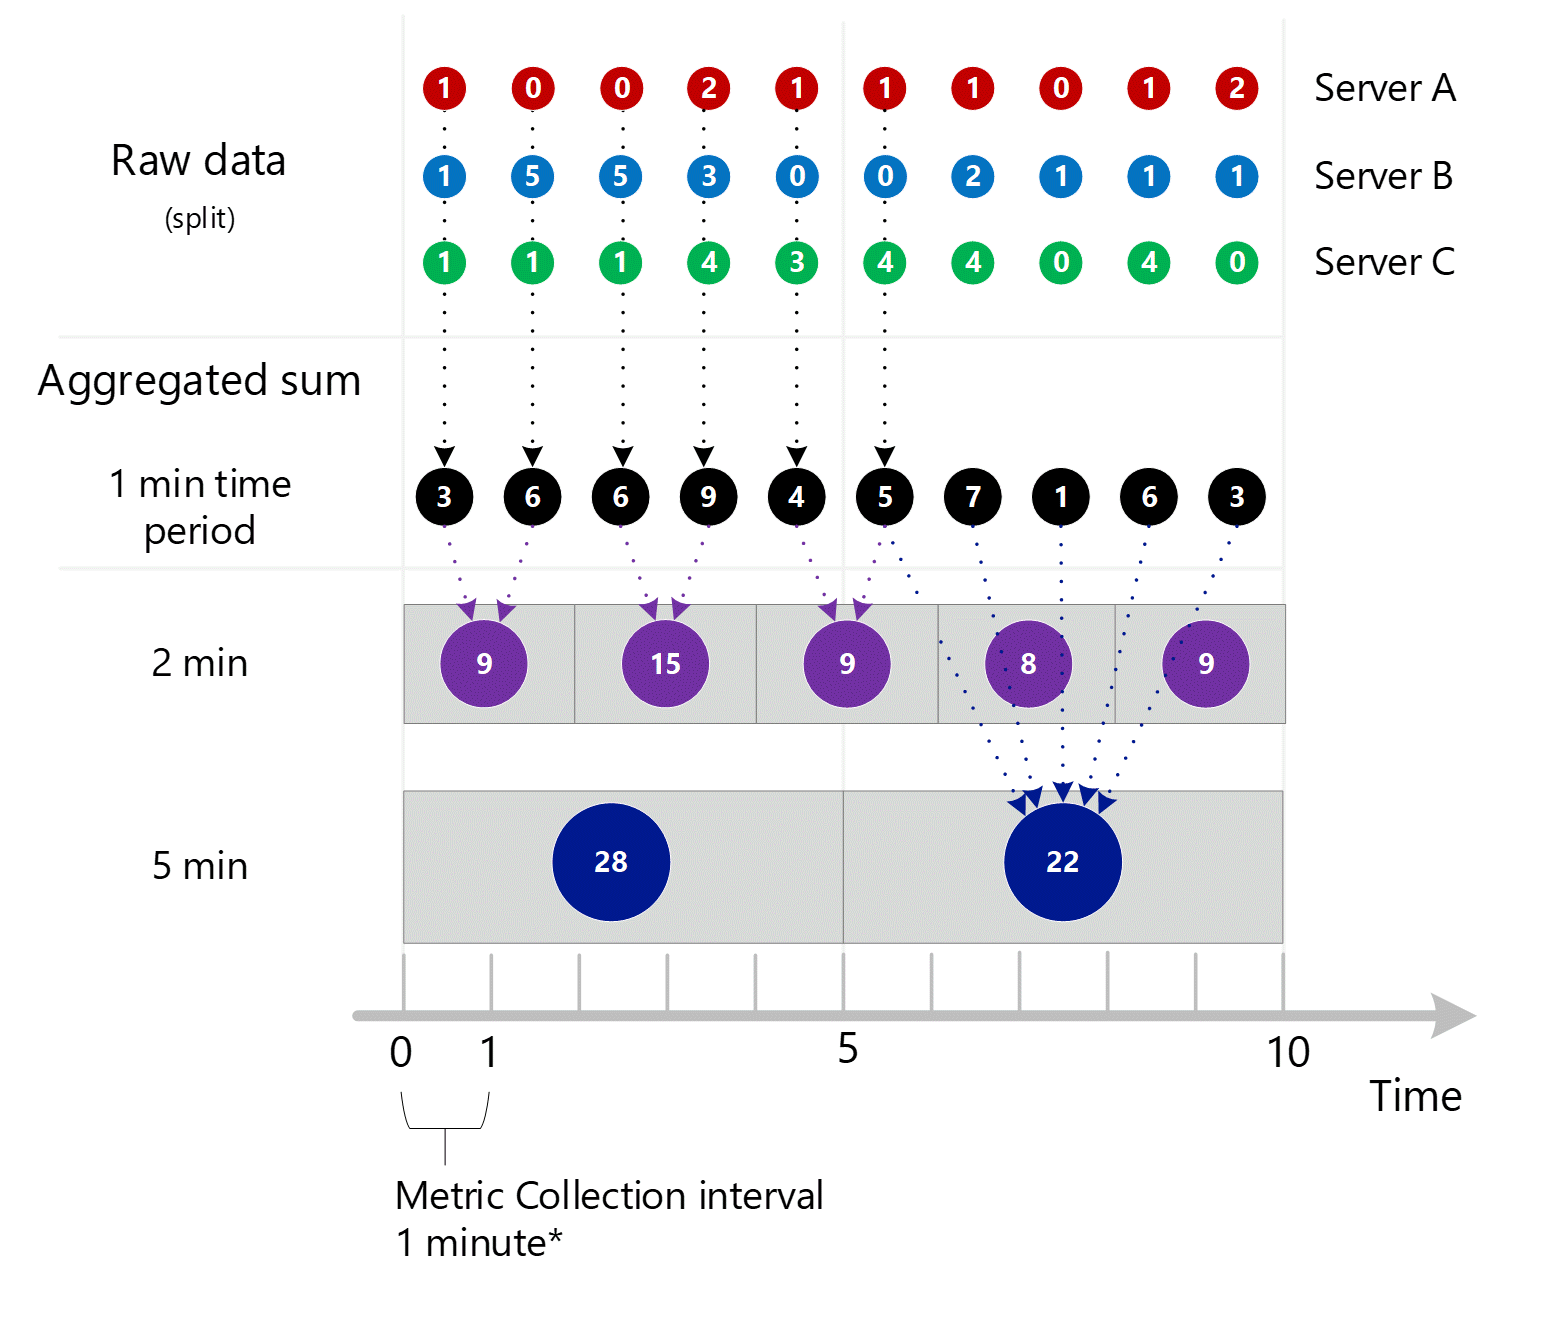 Capture d’écran montrant la consolidation des trois captures d’écran précédentes. Plusieurs entrées agrégées de 1 minute pour la dimension Serveur, qui sont ensuite agrégées à intervalles de 1, 2 et 5 minutes. Les serveurs A, B et C sont affichés individuellement